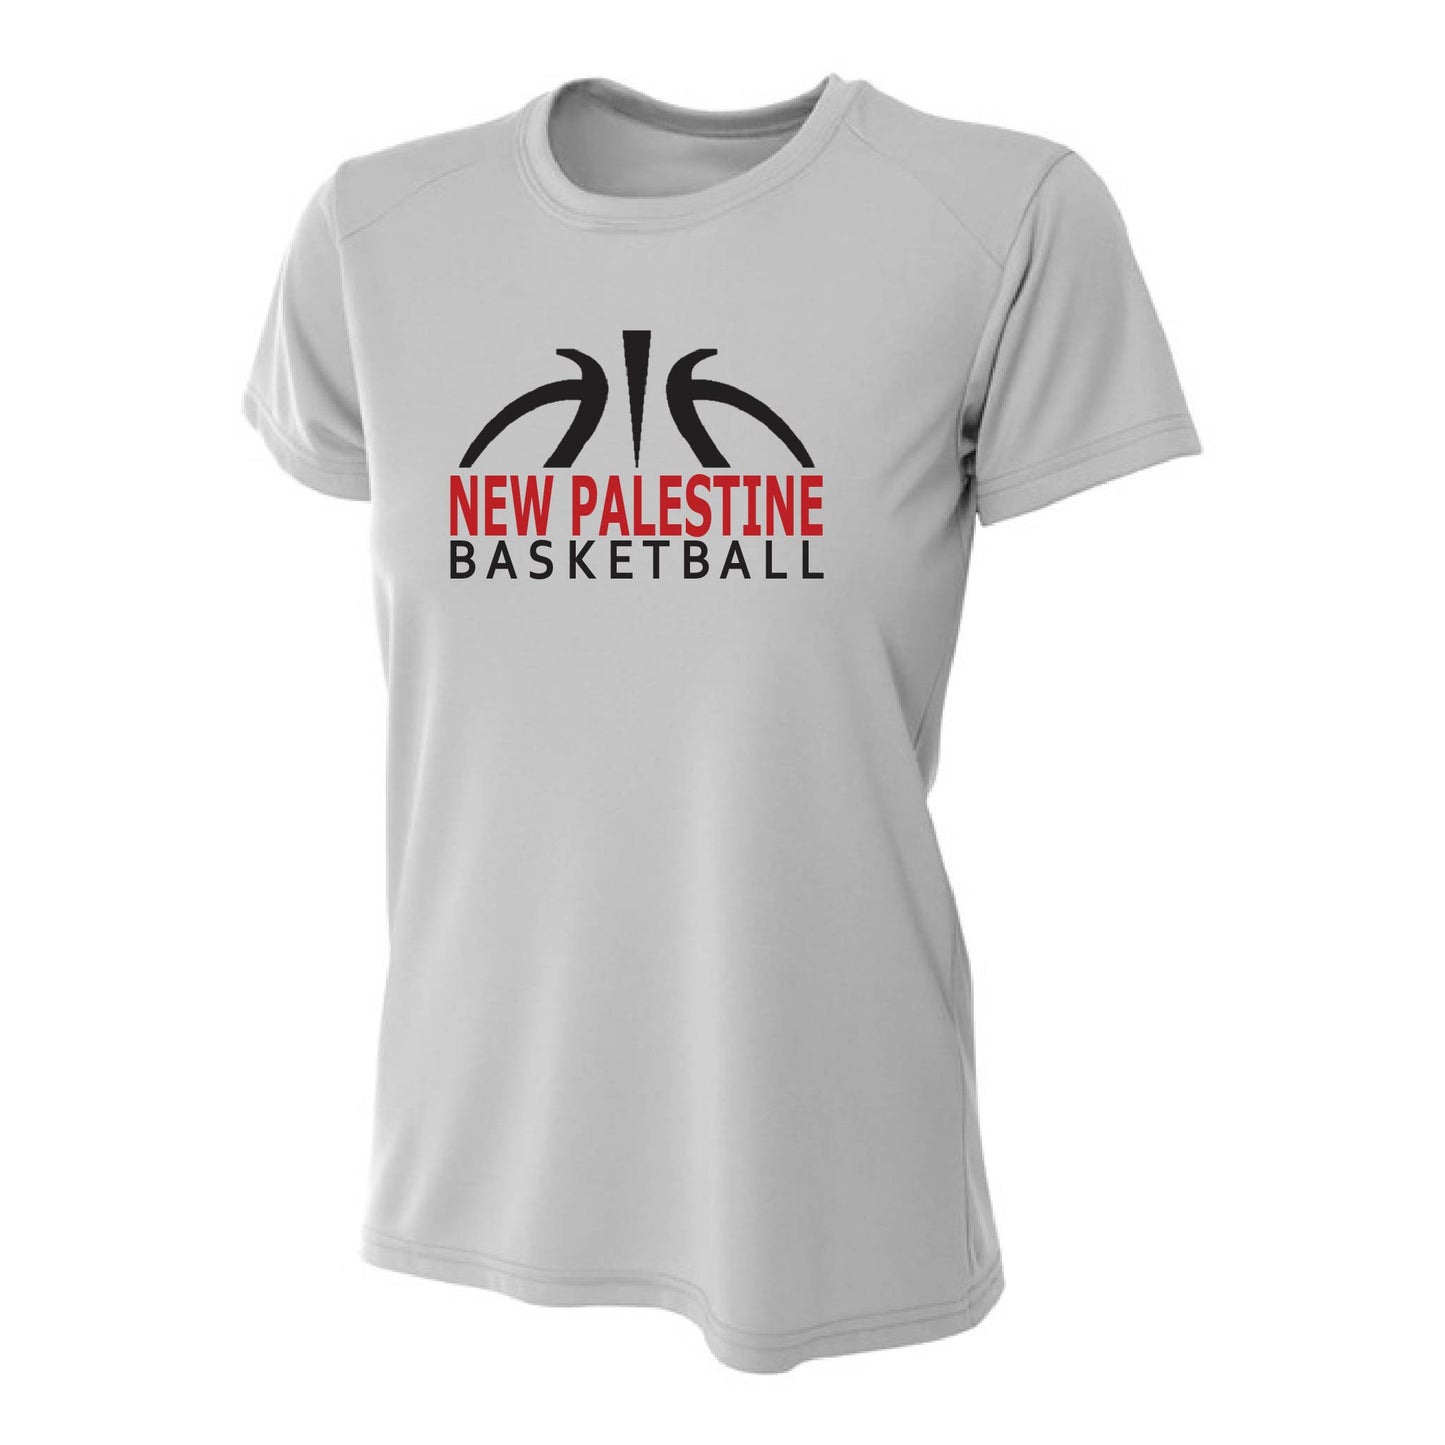 Womens S/S T-Shirt - NP Basketball